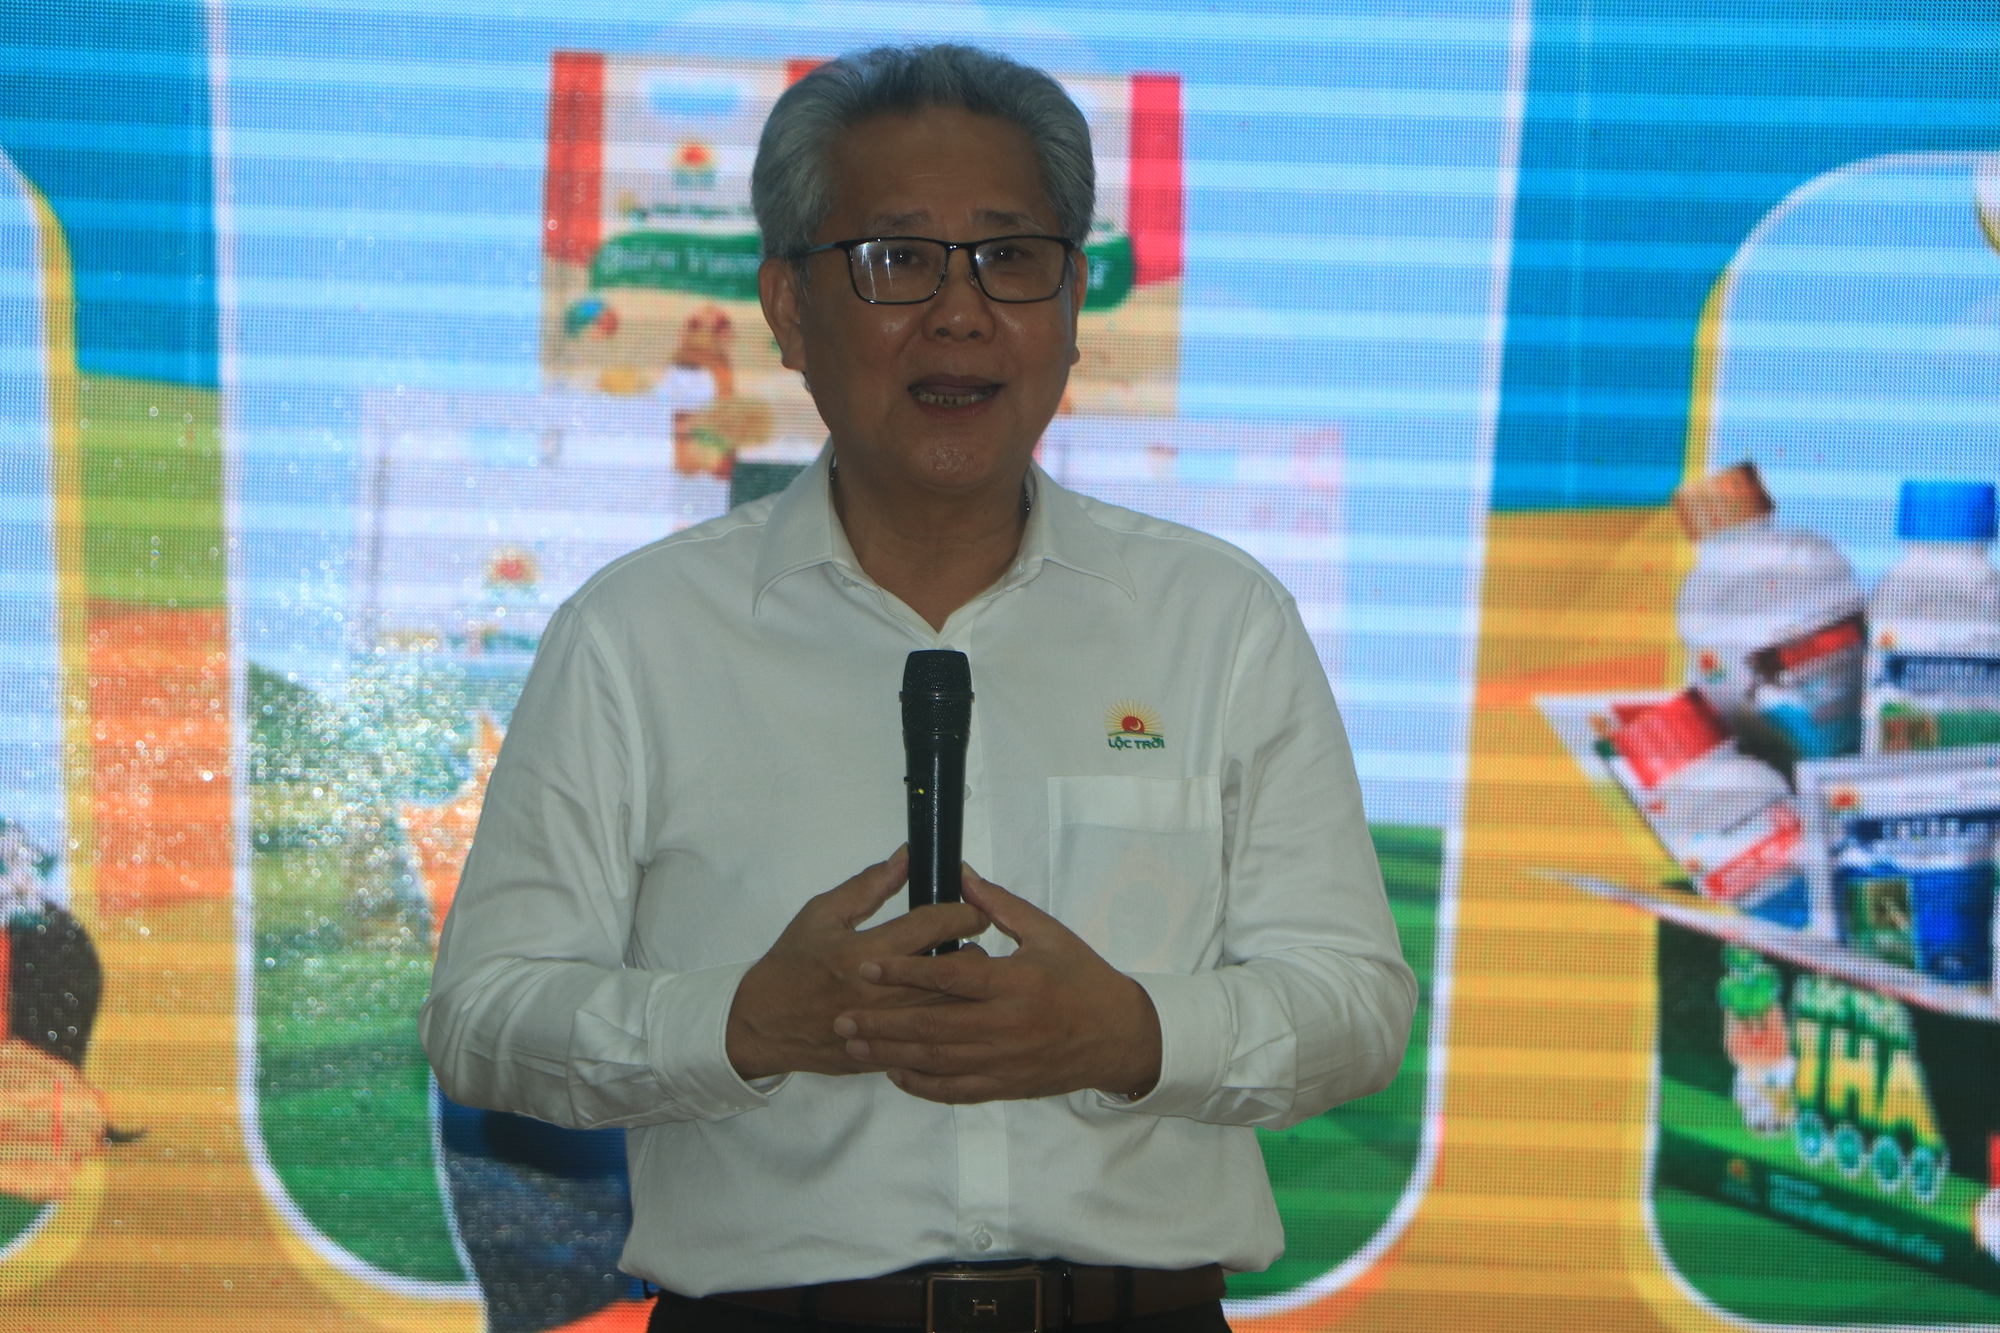 Hội Nông dân tỉnh An Giang ký kết hợp tác với doanh nghiệp, đặt mục tiêu thành lập 200 chi hội nông dân - Ảnh 1.